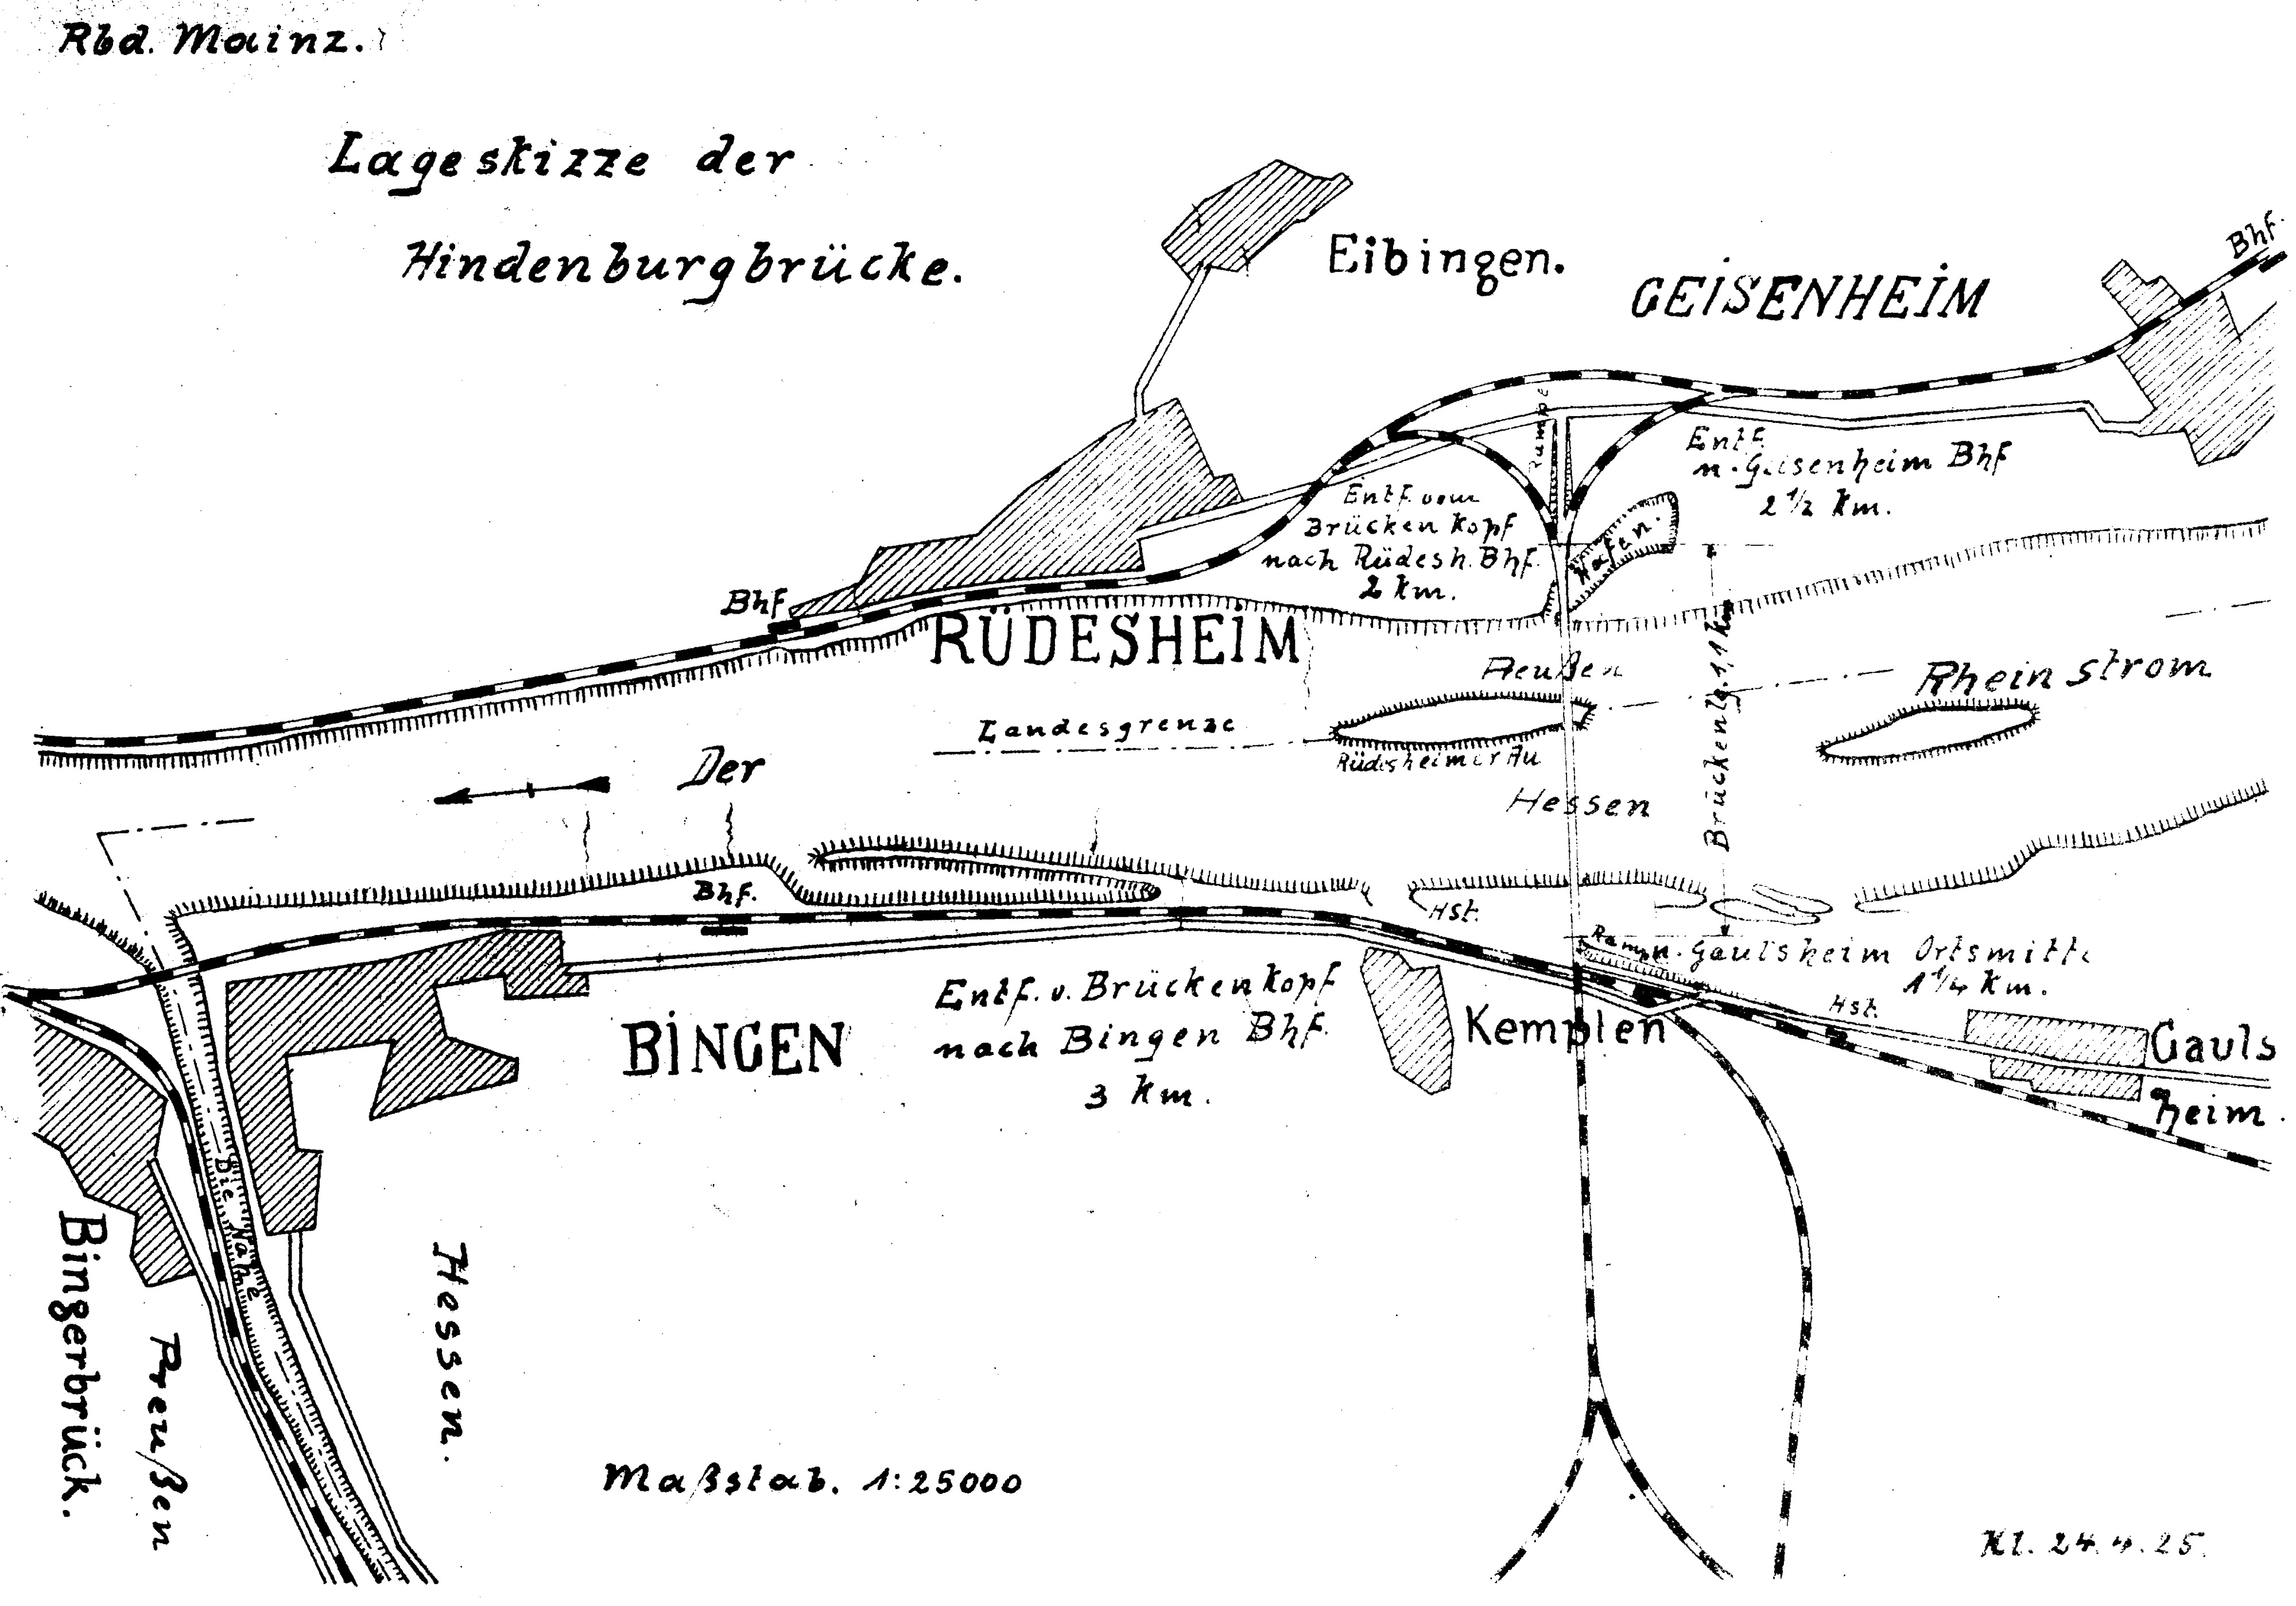 Lageskizze Hindenburgbrücke am Rhein - Reichsbahndirektion Mainz